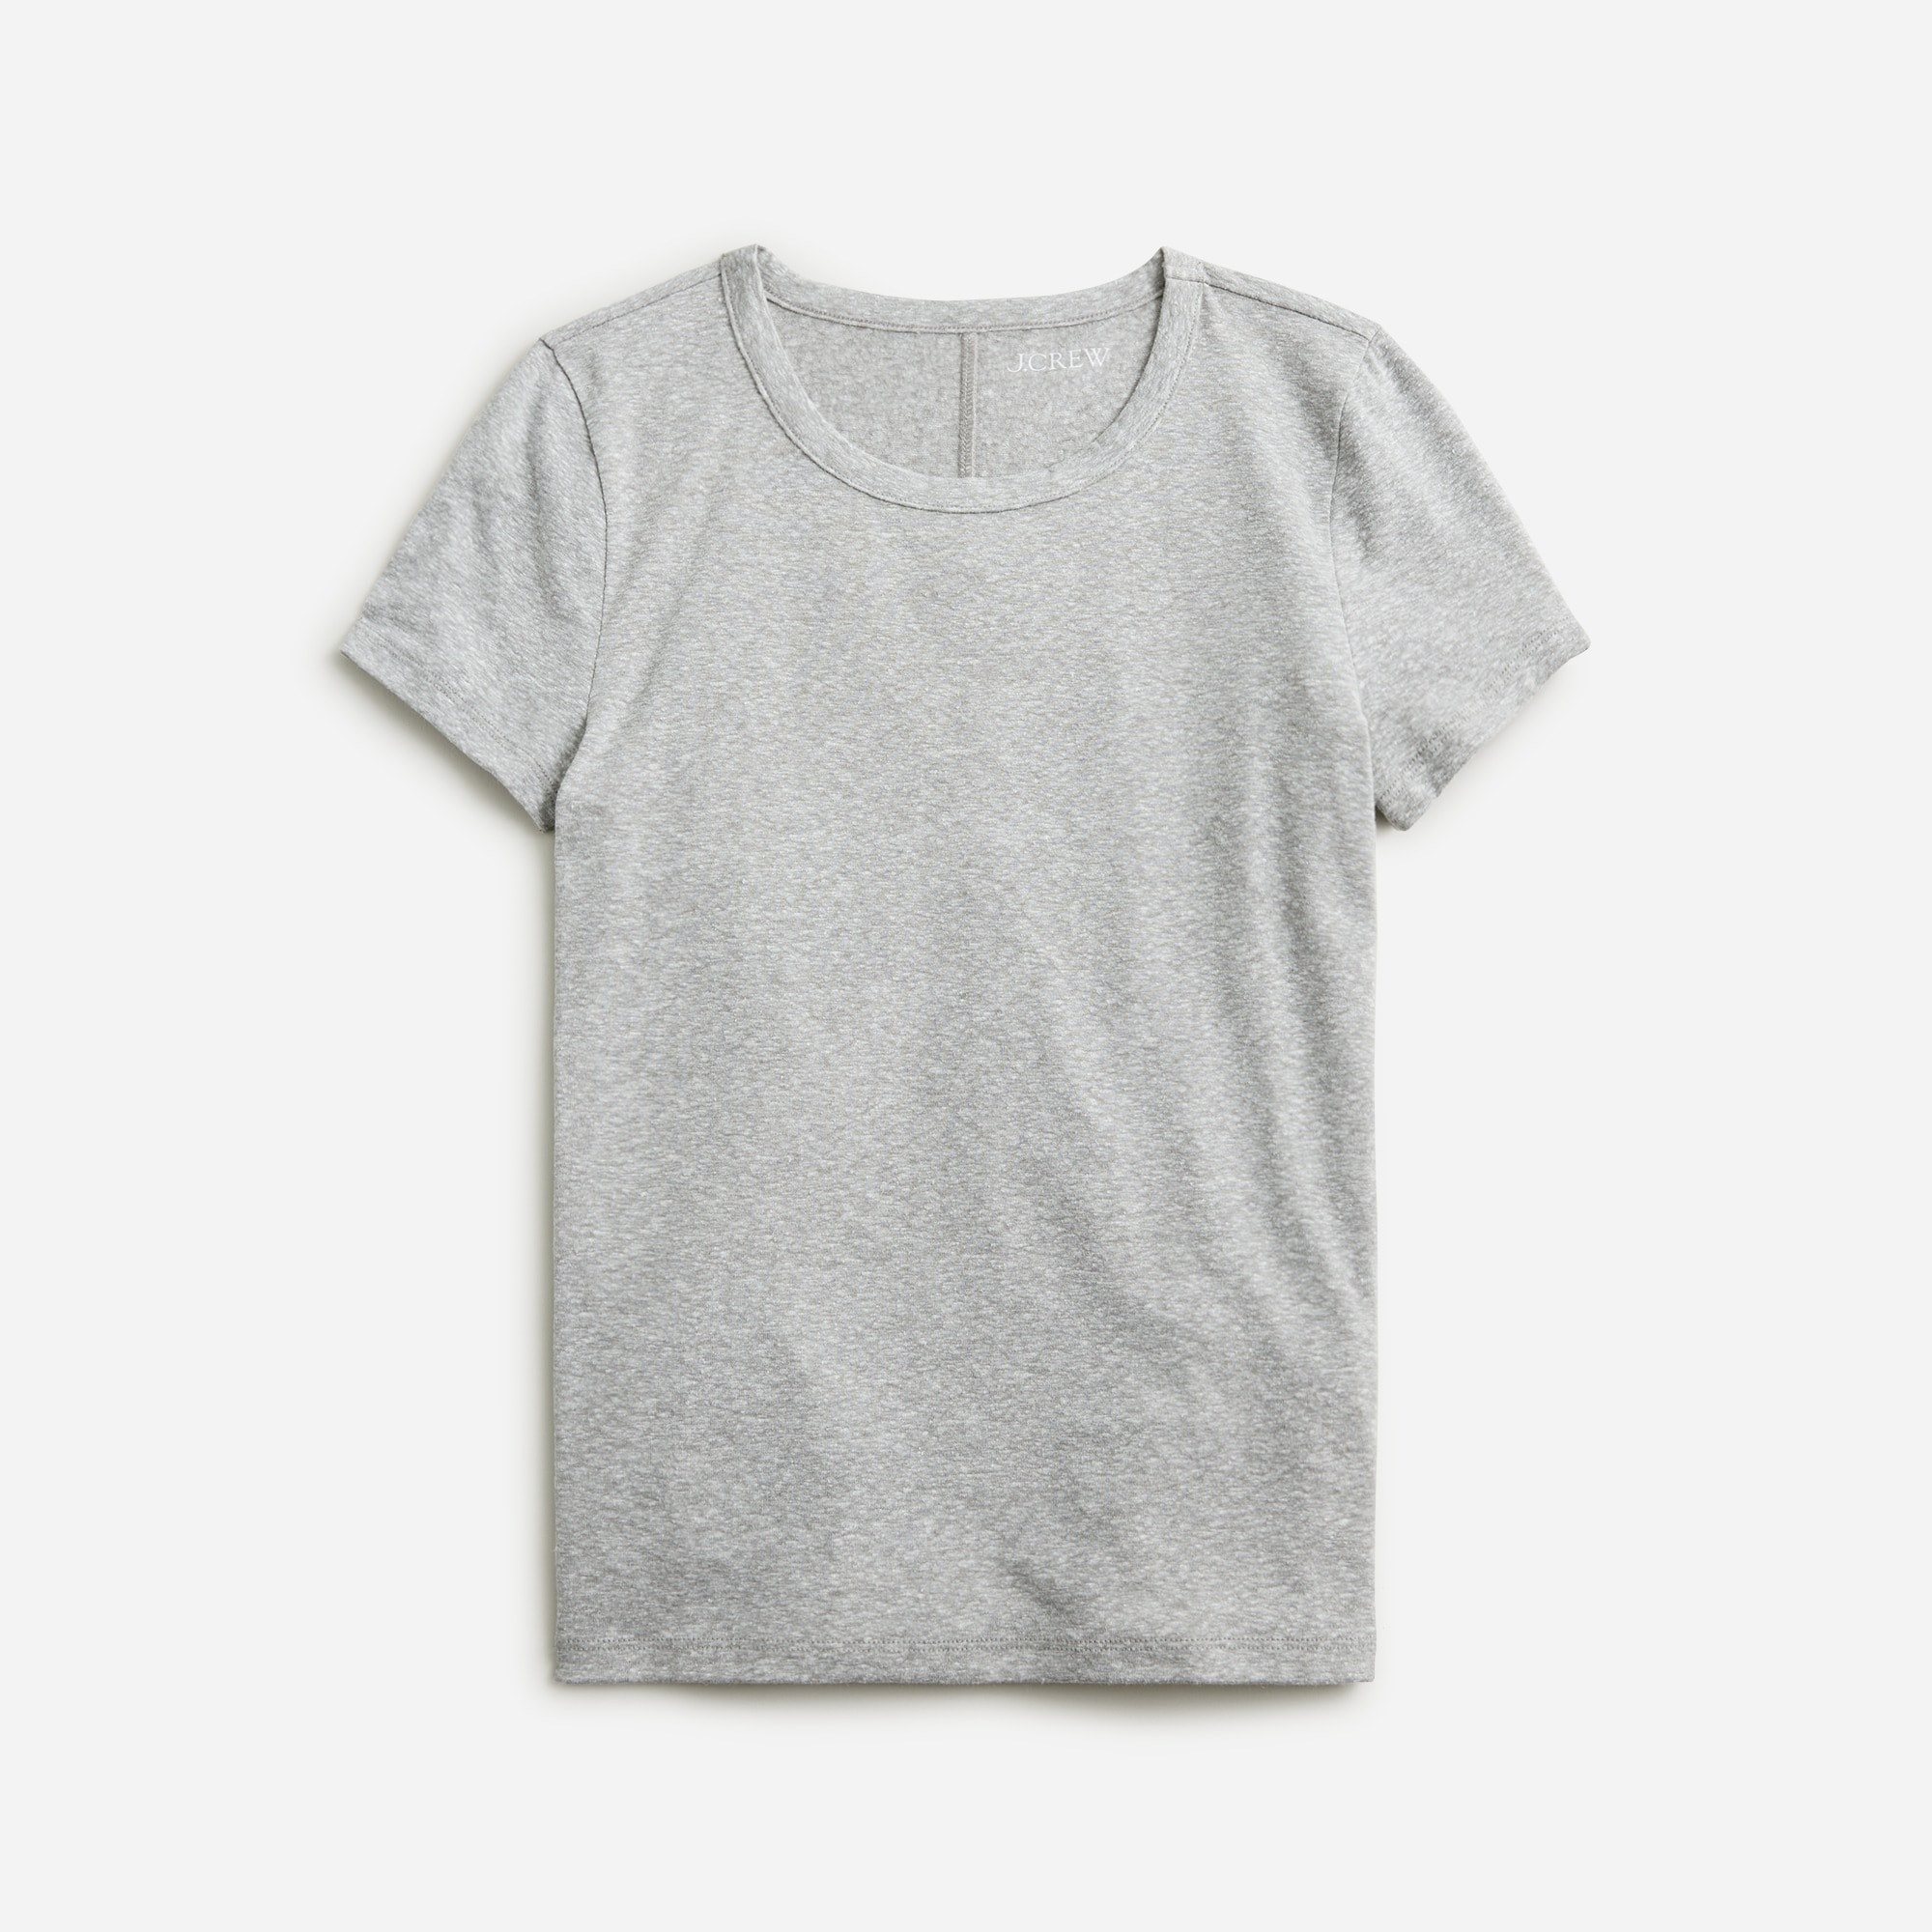  Stretch linen-blend crewneck T-shirt